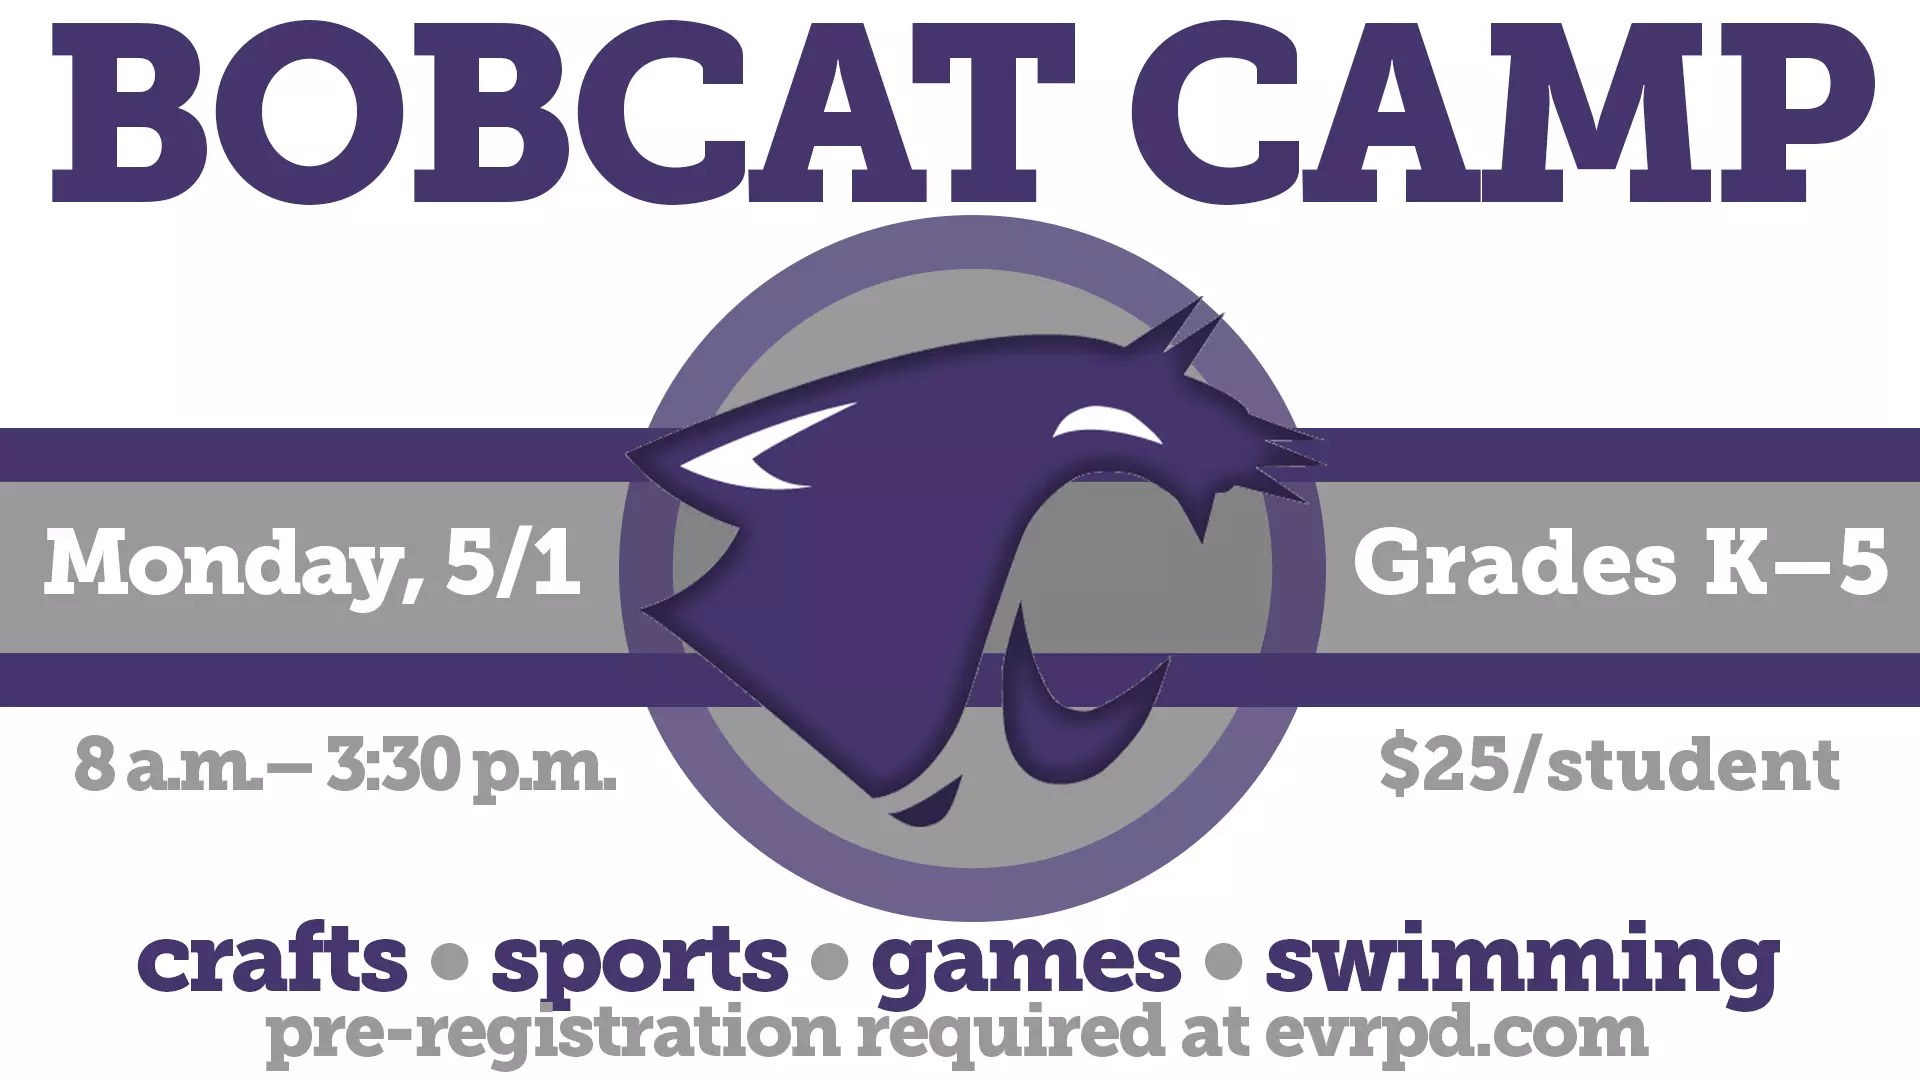 Bobcat Camp for grades K-5